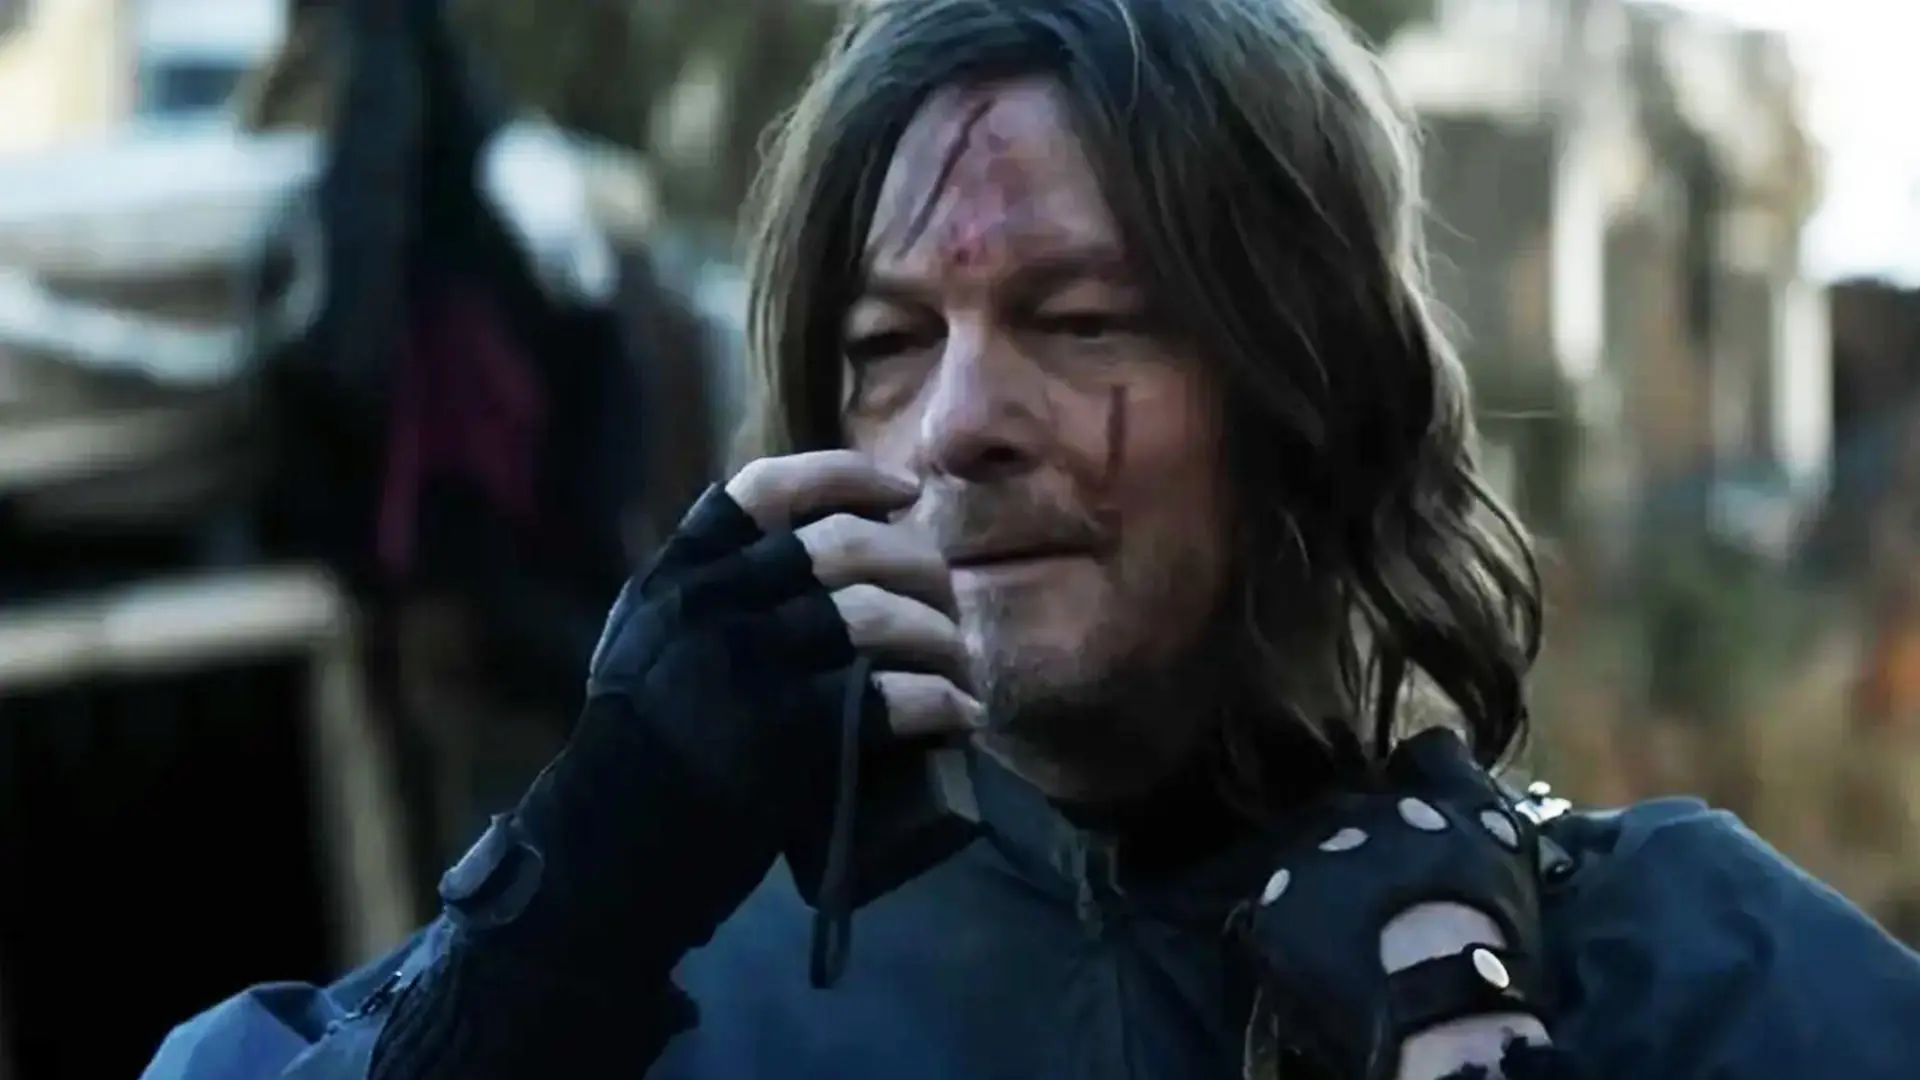 تلاش دریل دیکسون برای بازگشت به خانه در اولین کلیپ سریال The Walking Dead: Daryl Dixon